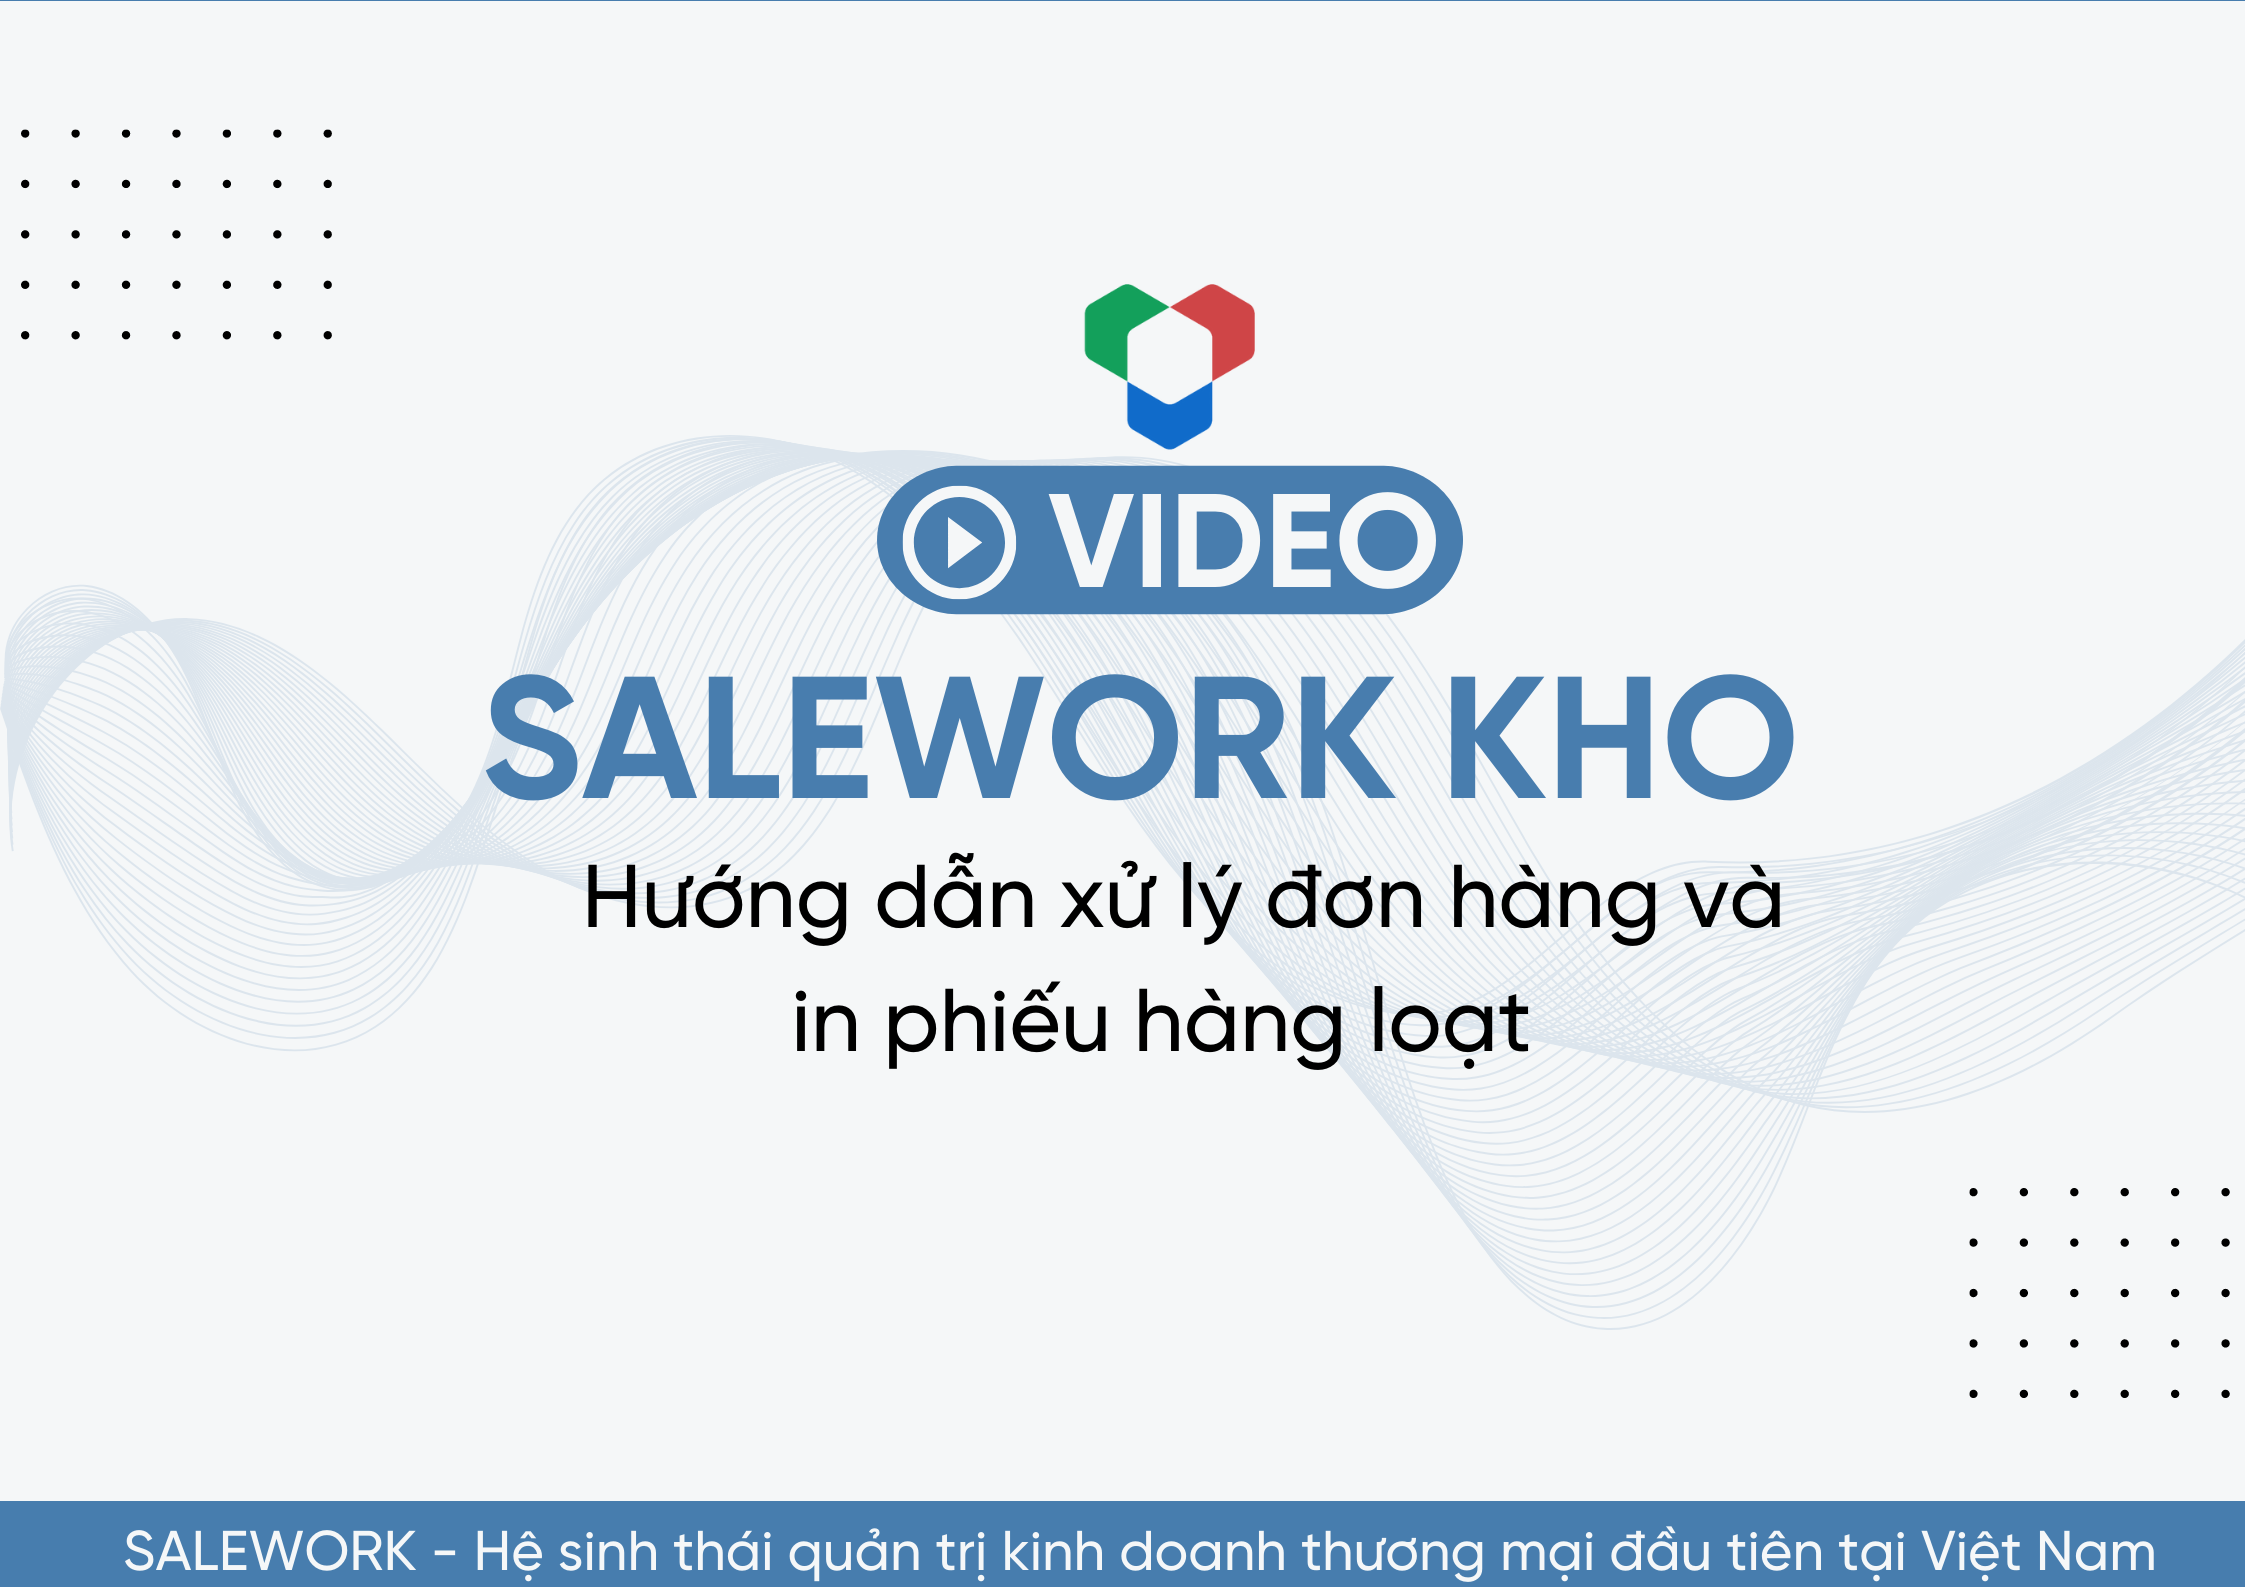 [VIDEO] Hướng dẫn xử lý đơn hàng và in phiếu hàng loạt tại Salework Kho - 12